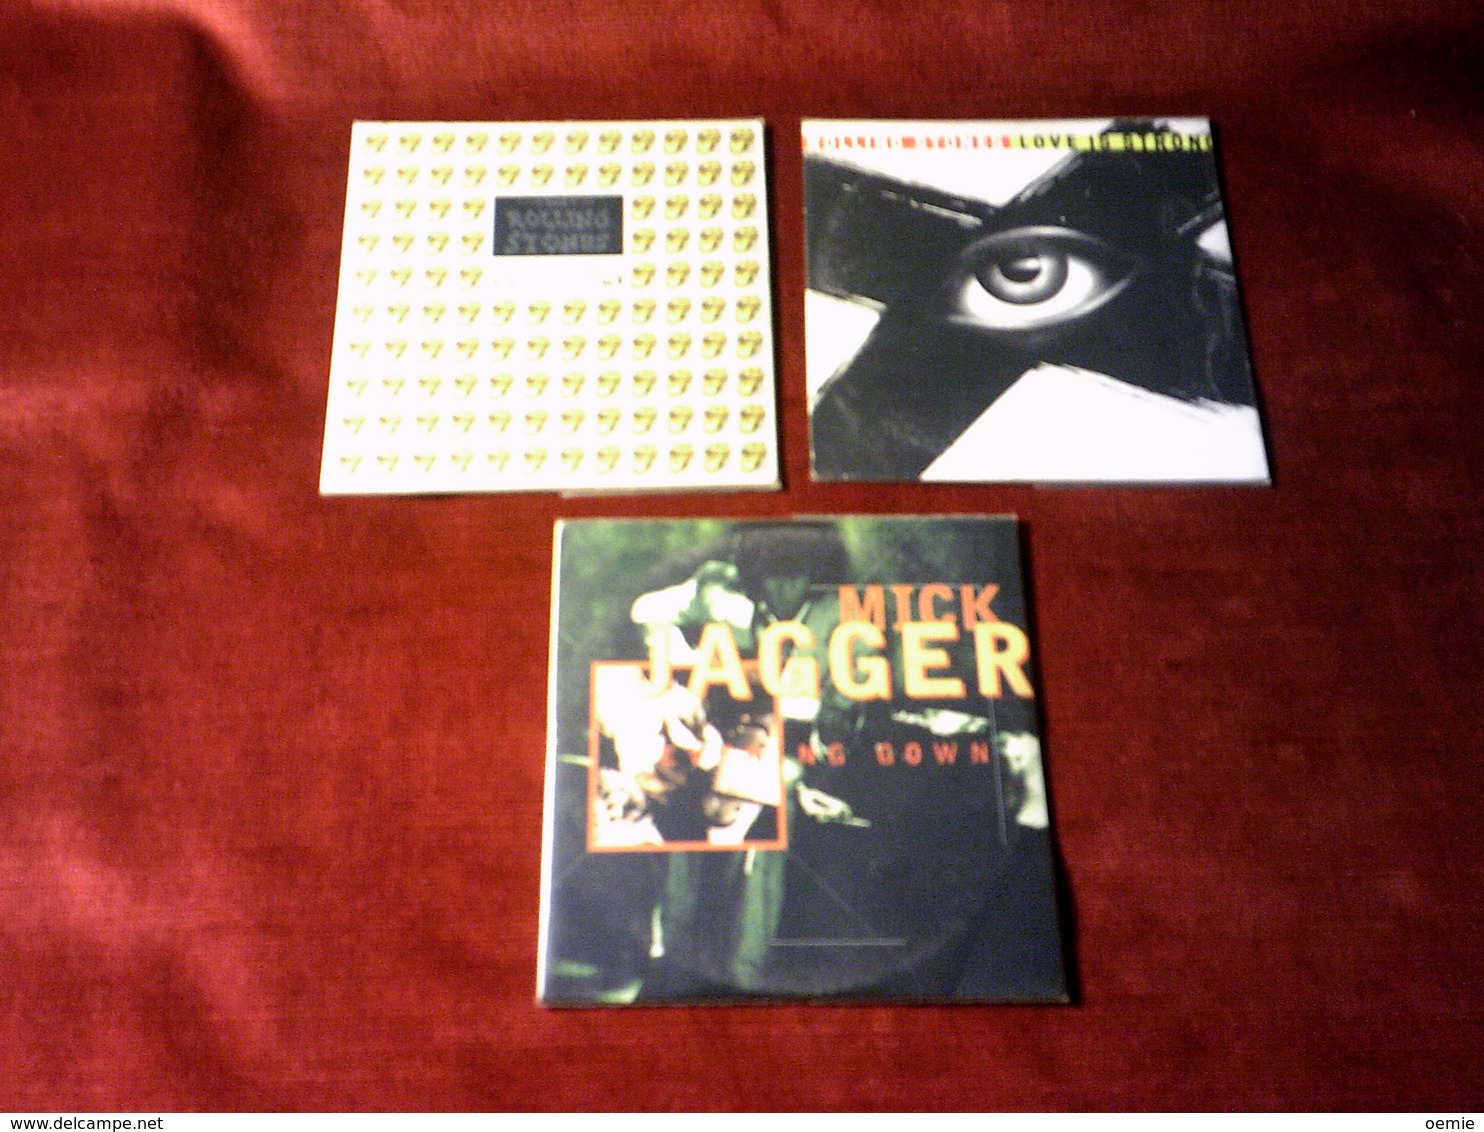 ROLLING  STONES  ET MICK JAGGER  °  COLLECTION DE 3  CD SINGLES - Collezioni